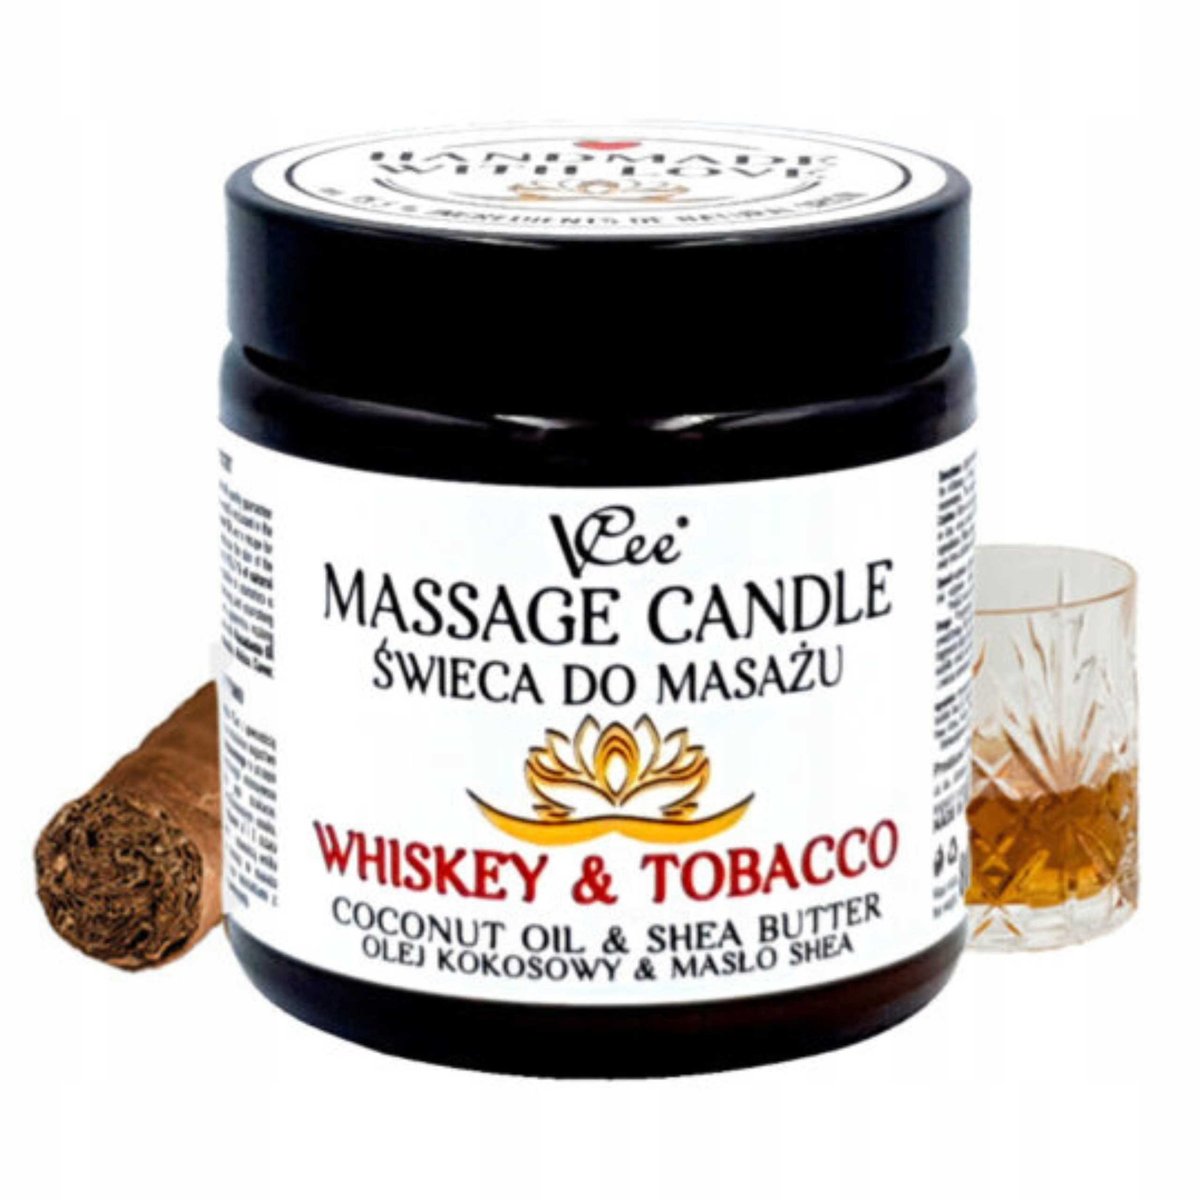 Nawilżająca świeca do masażu VCee 80 g - różne zapachy - Whiskey & Tobacco